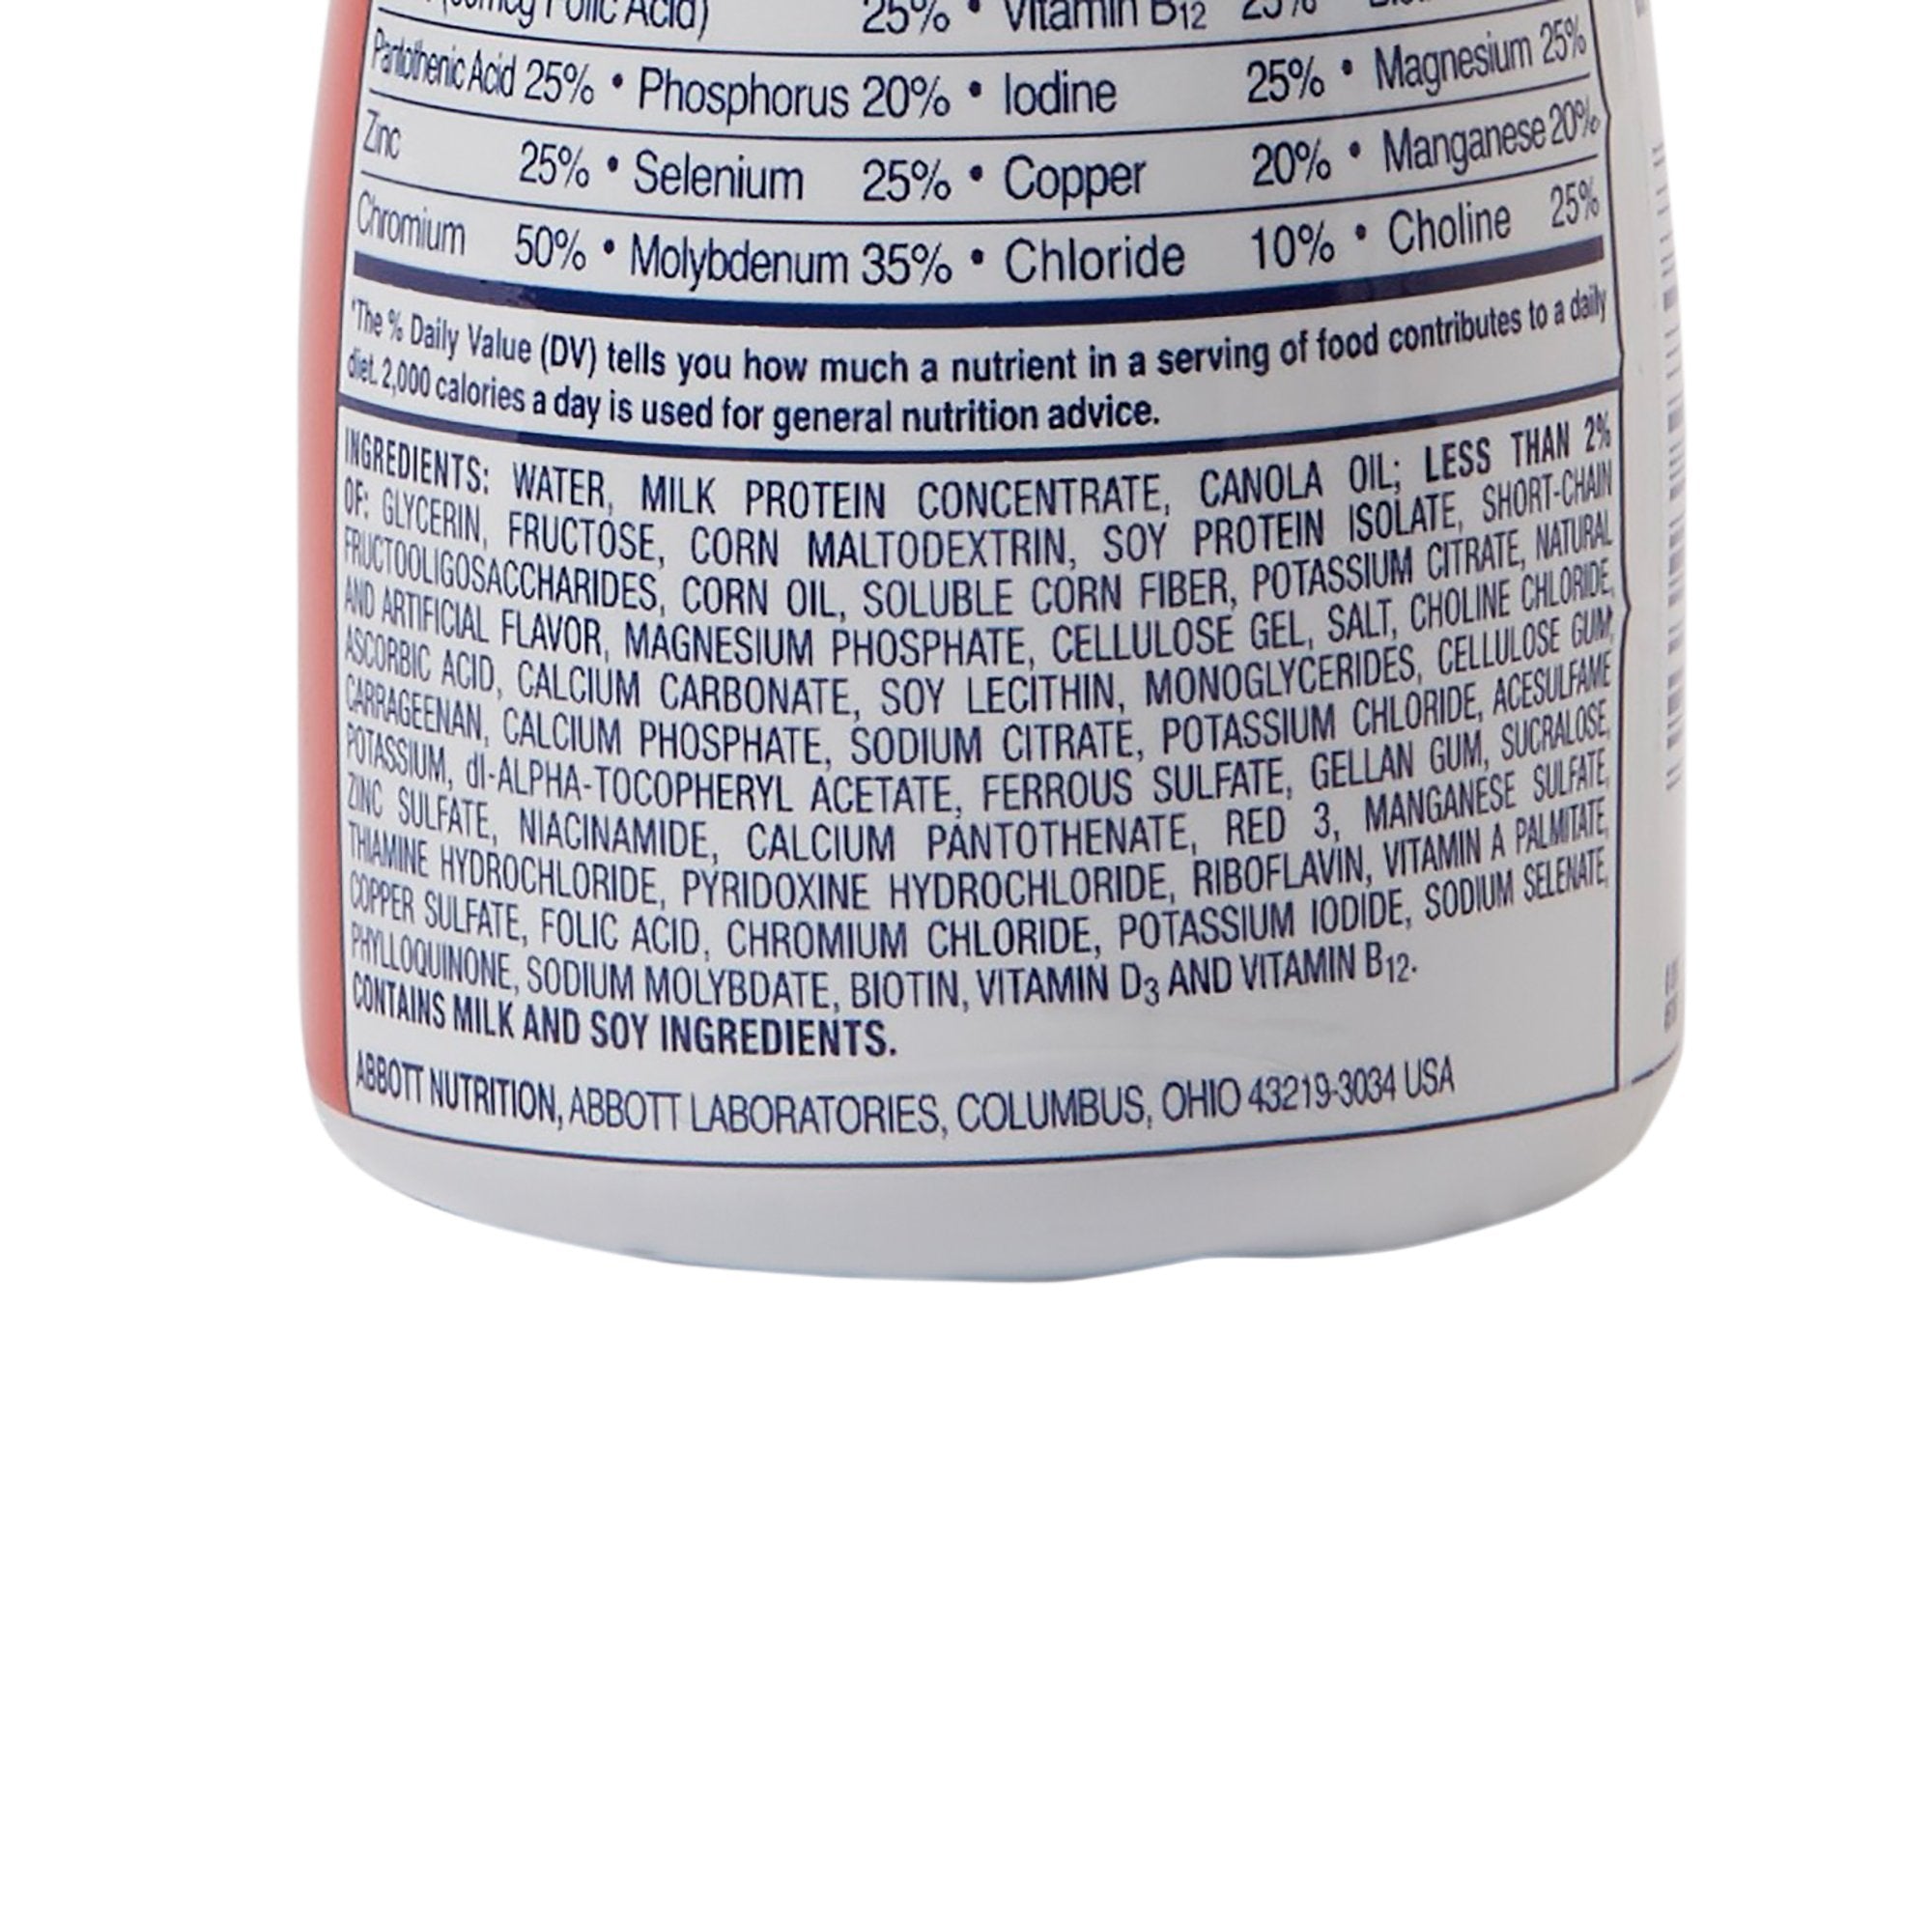 Oral Supplement Glucerna Original Shake Creamy Strawberry Flavor Liquid 8 oz. Bottle